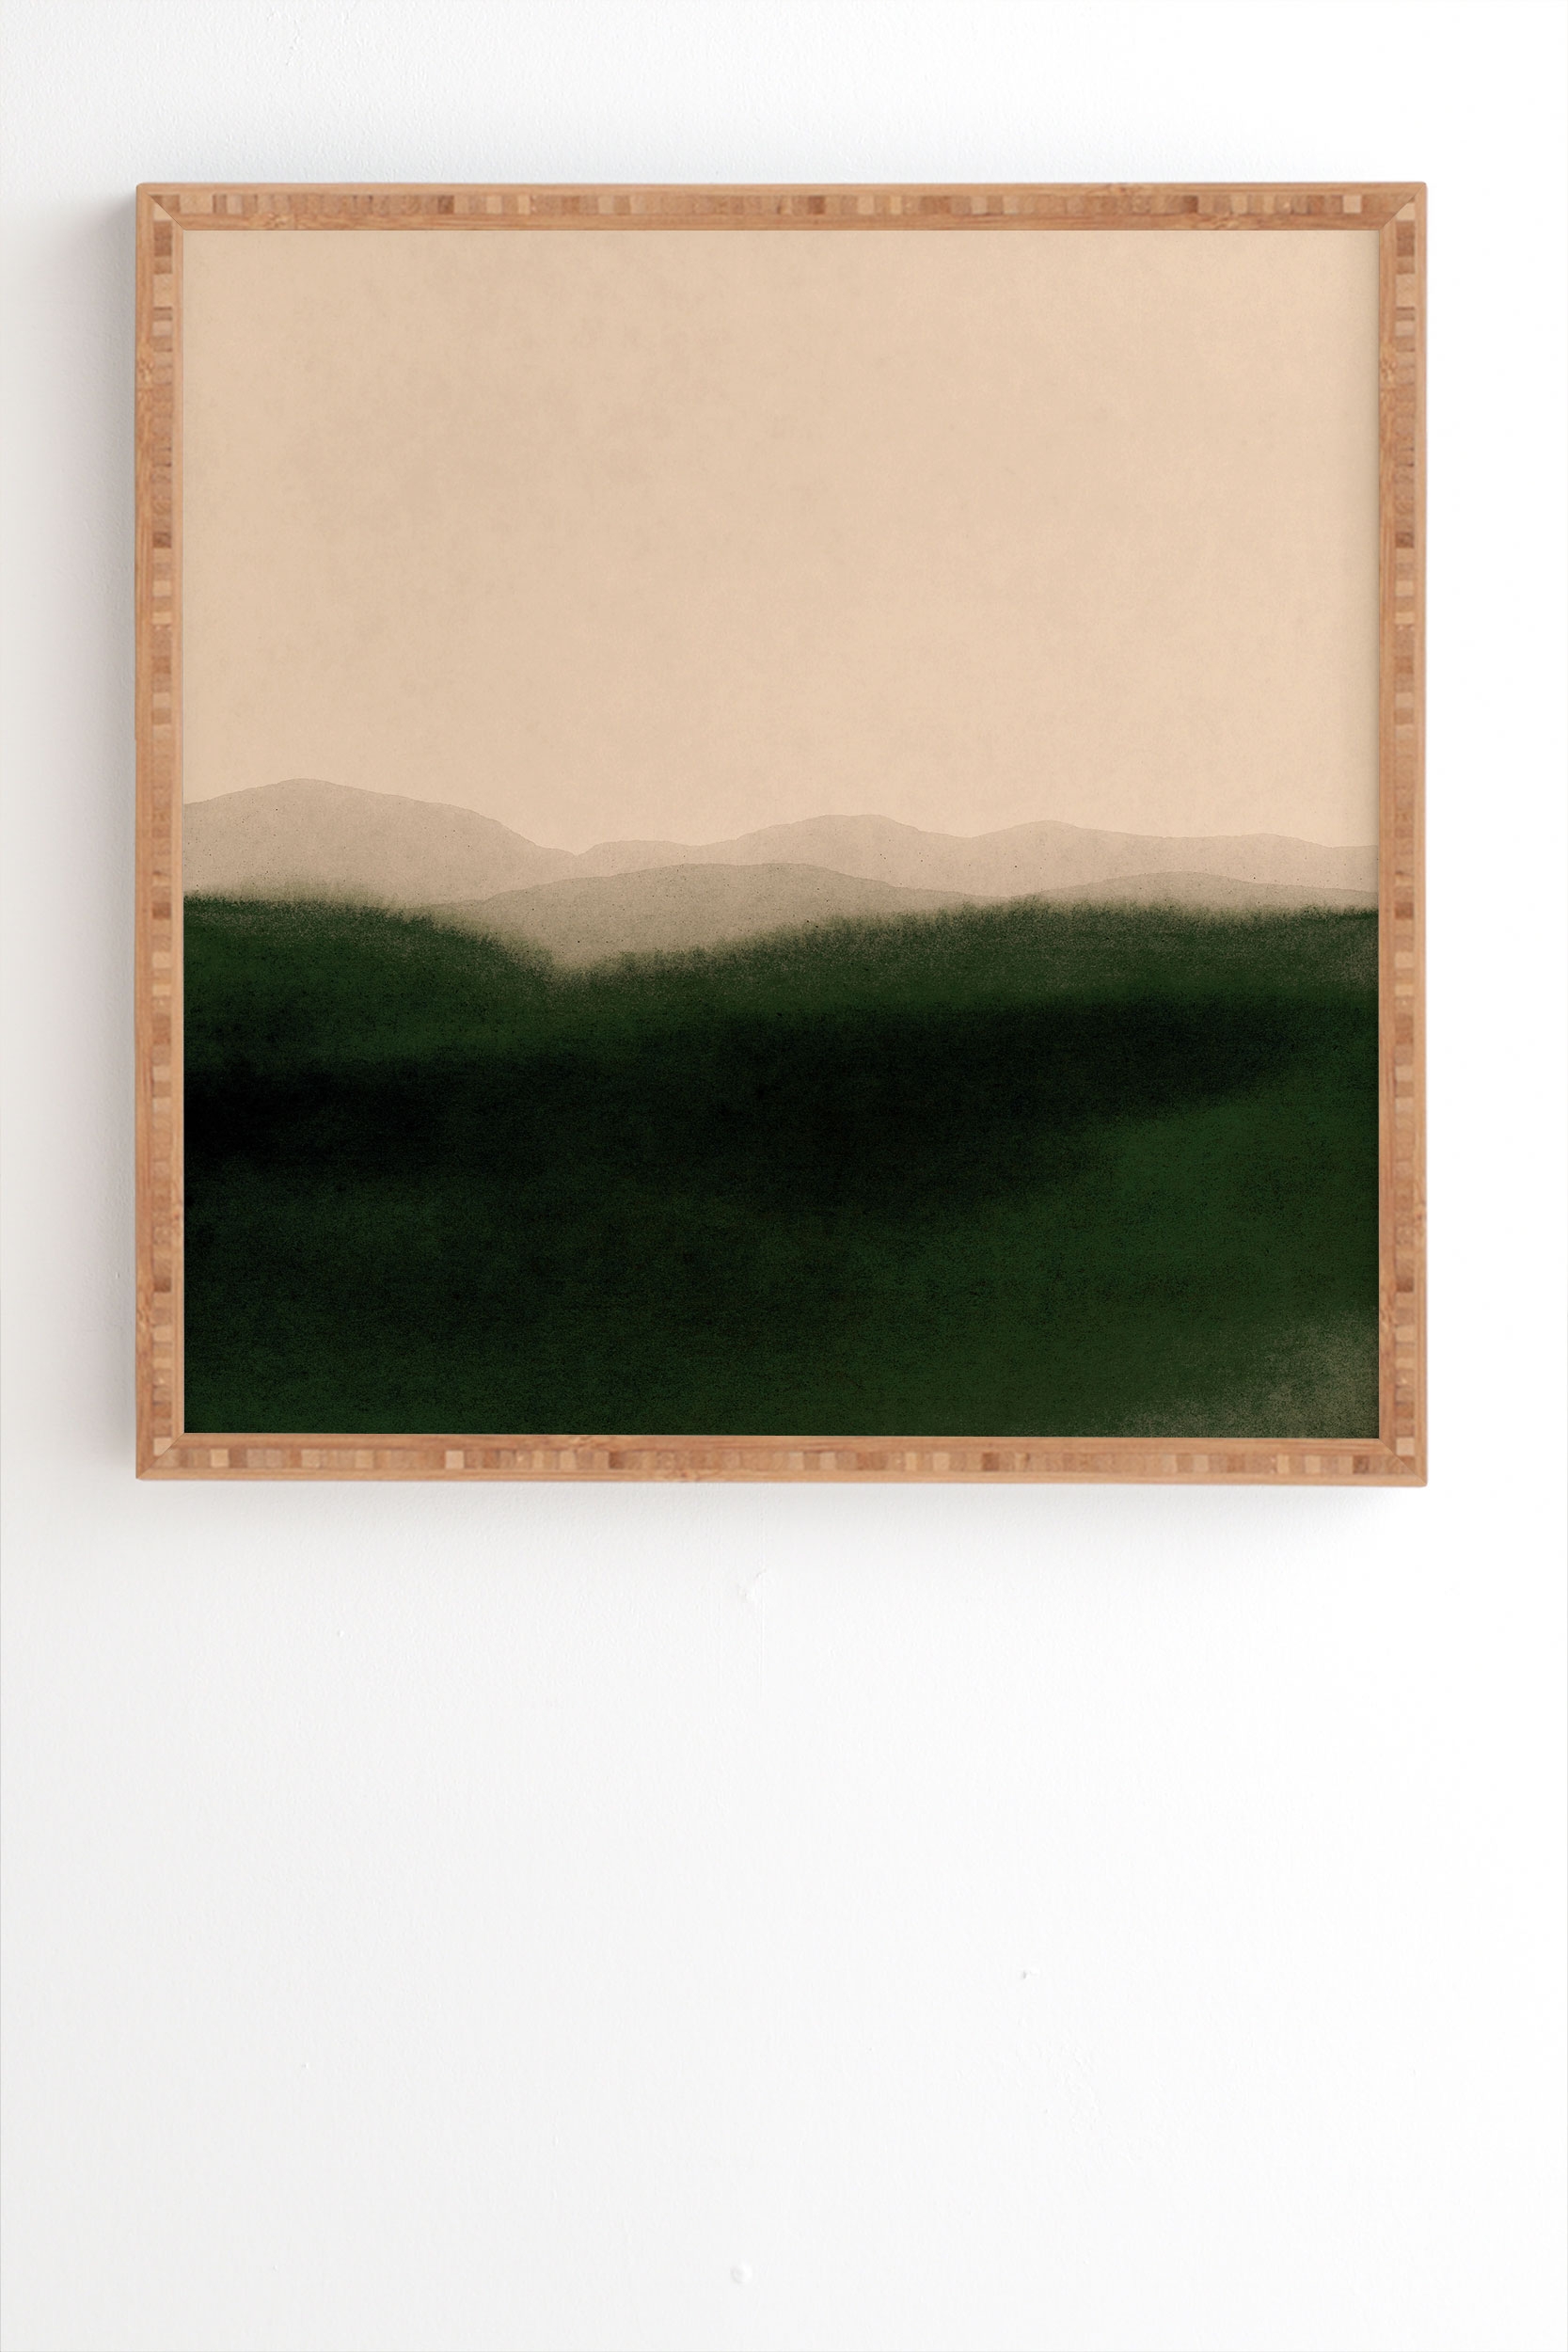 Green Hills by Iris Lehnhardt - Framed Wall Art Bamboo 20" x 20" - Image 1